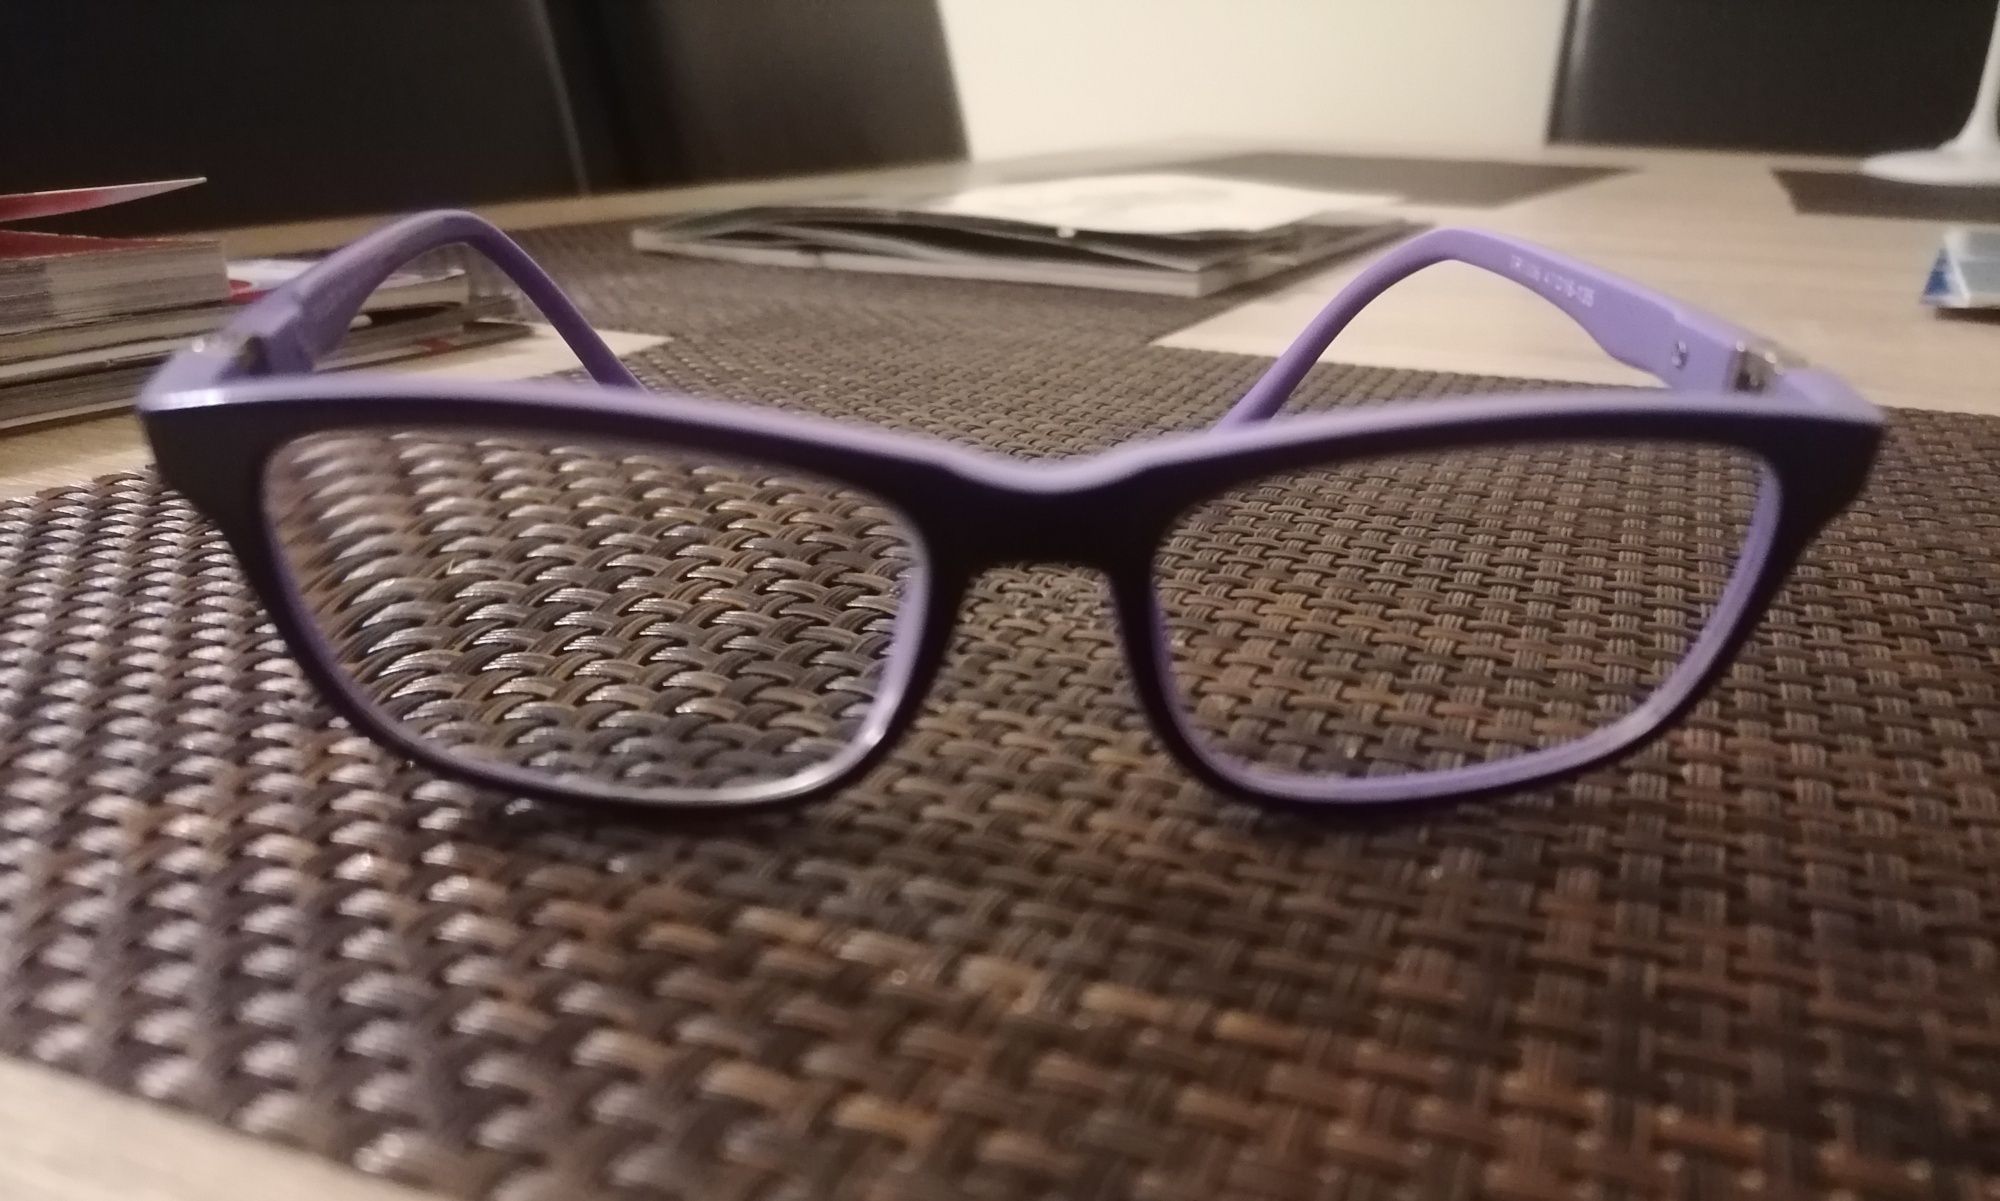 Oprawki do okularów dla dziewczynki